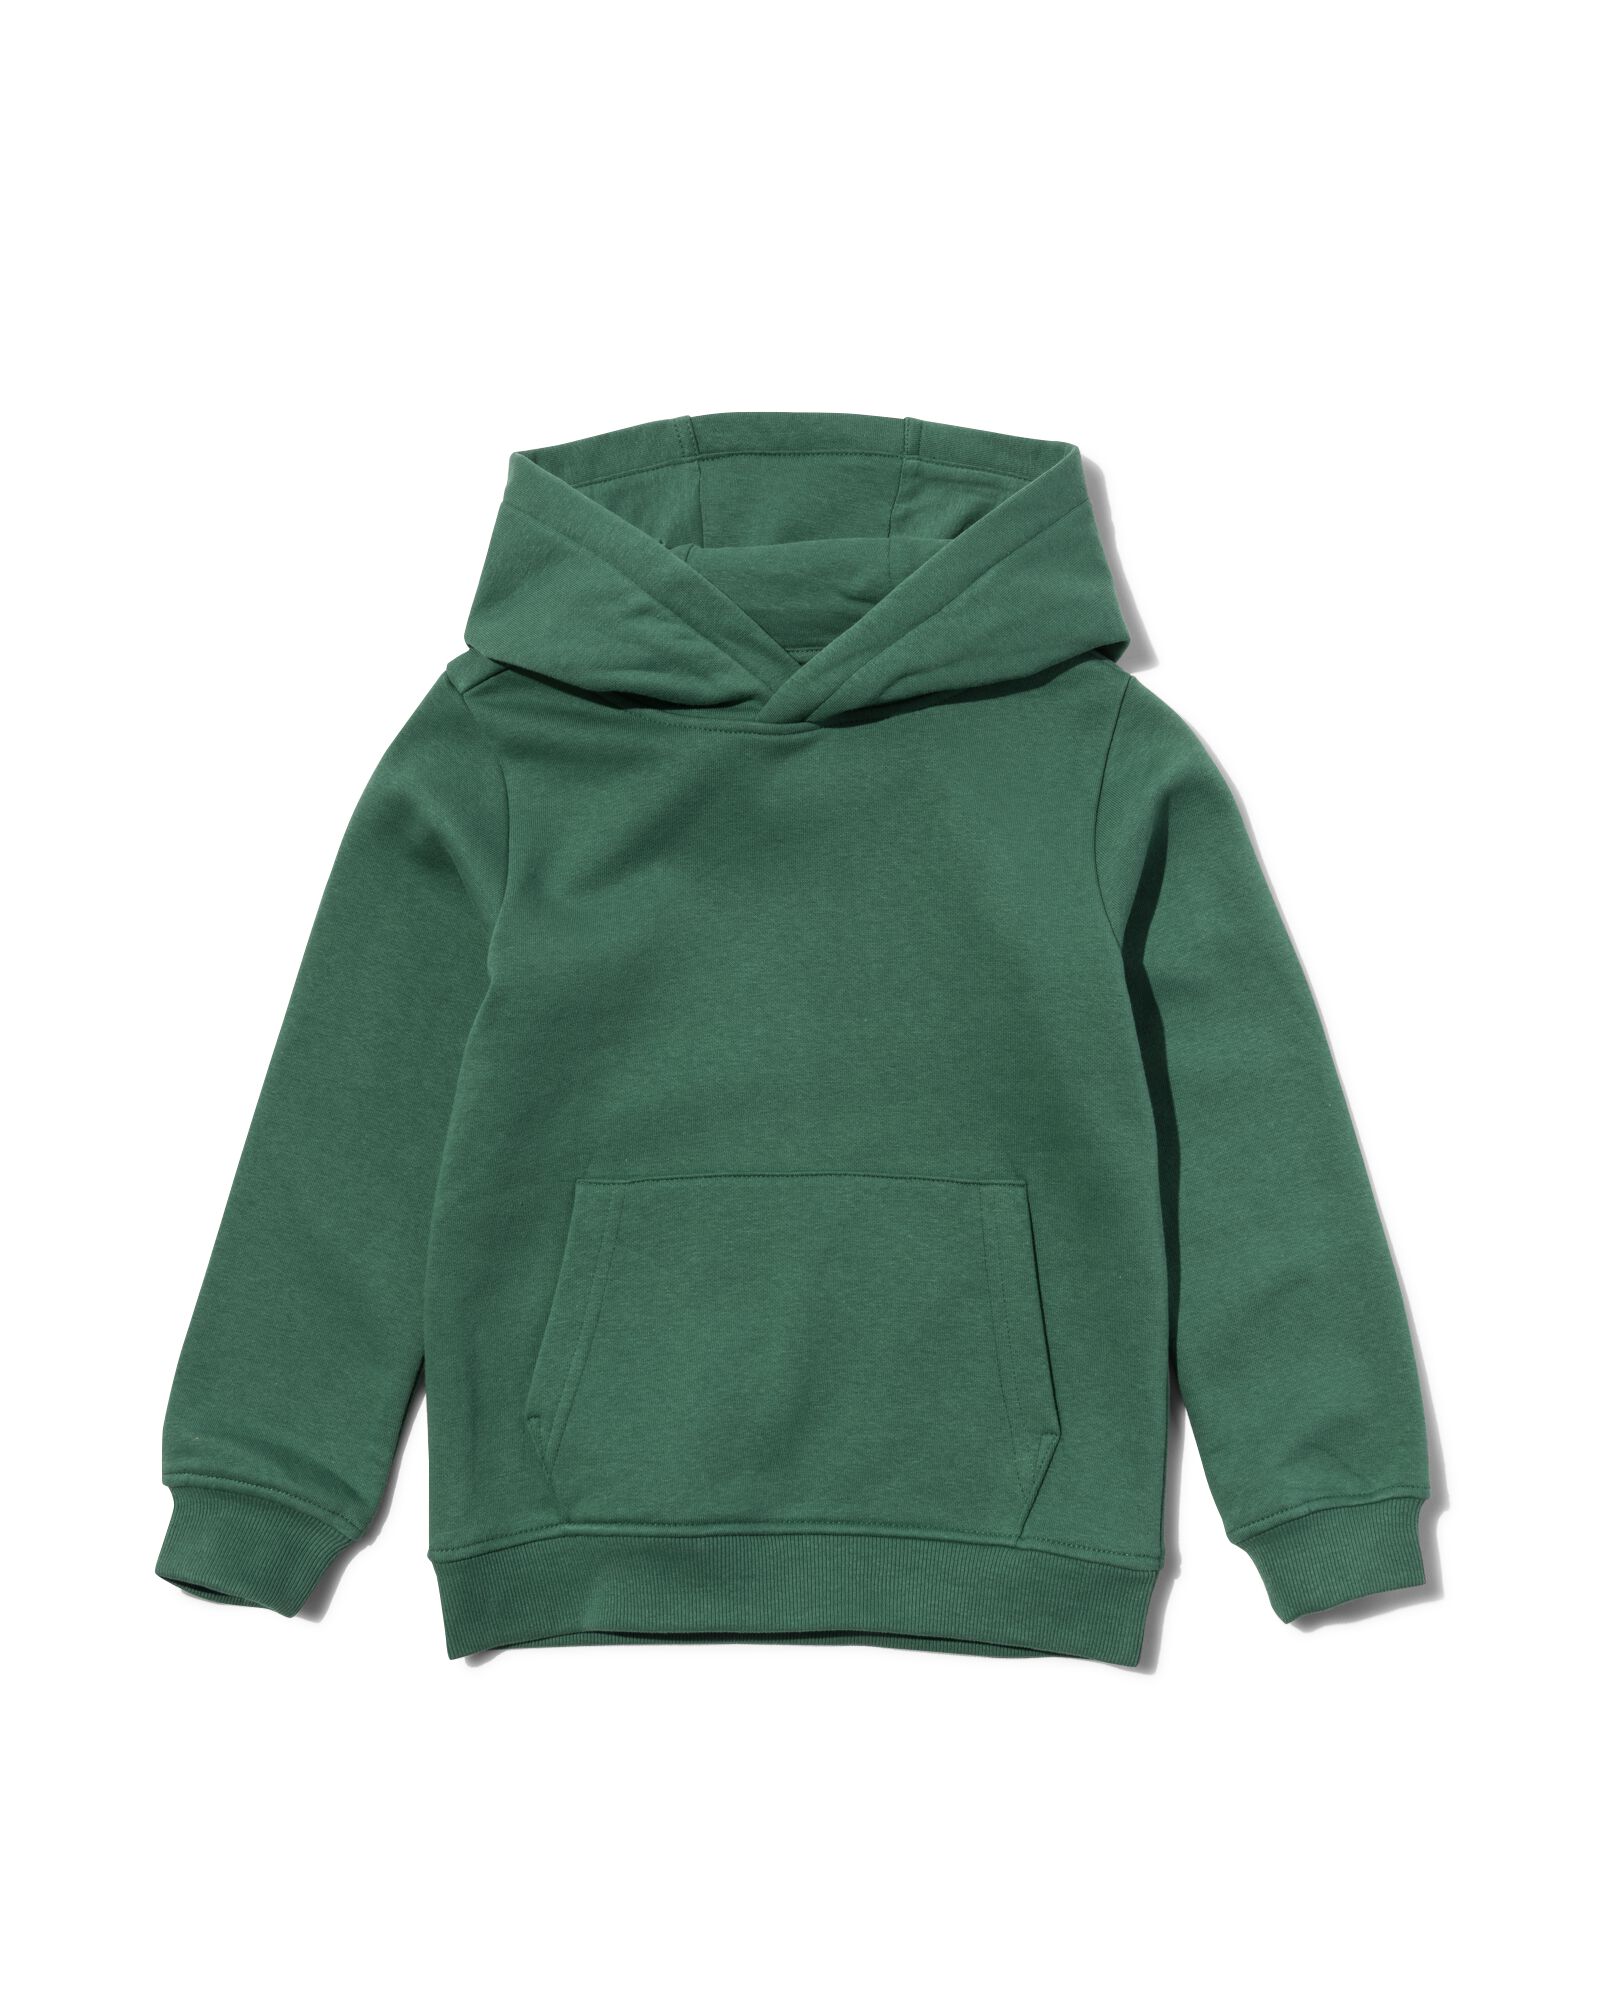 kinder hoodie groen 146/152 - 30756546 - HEMA